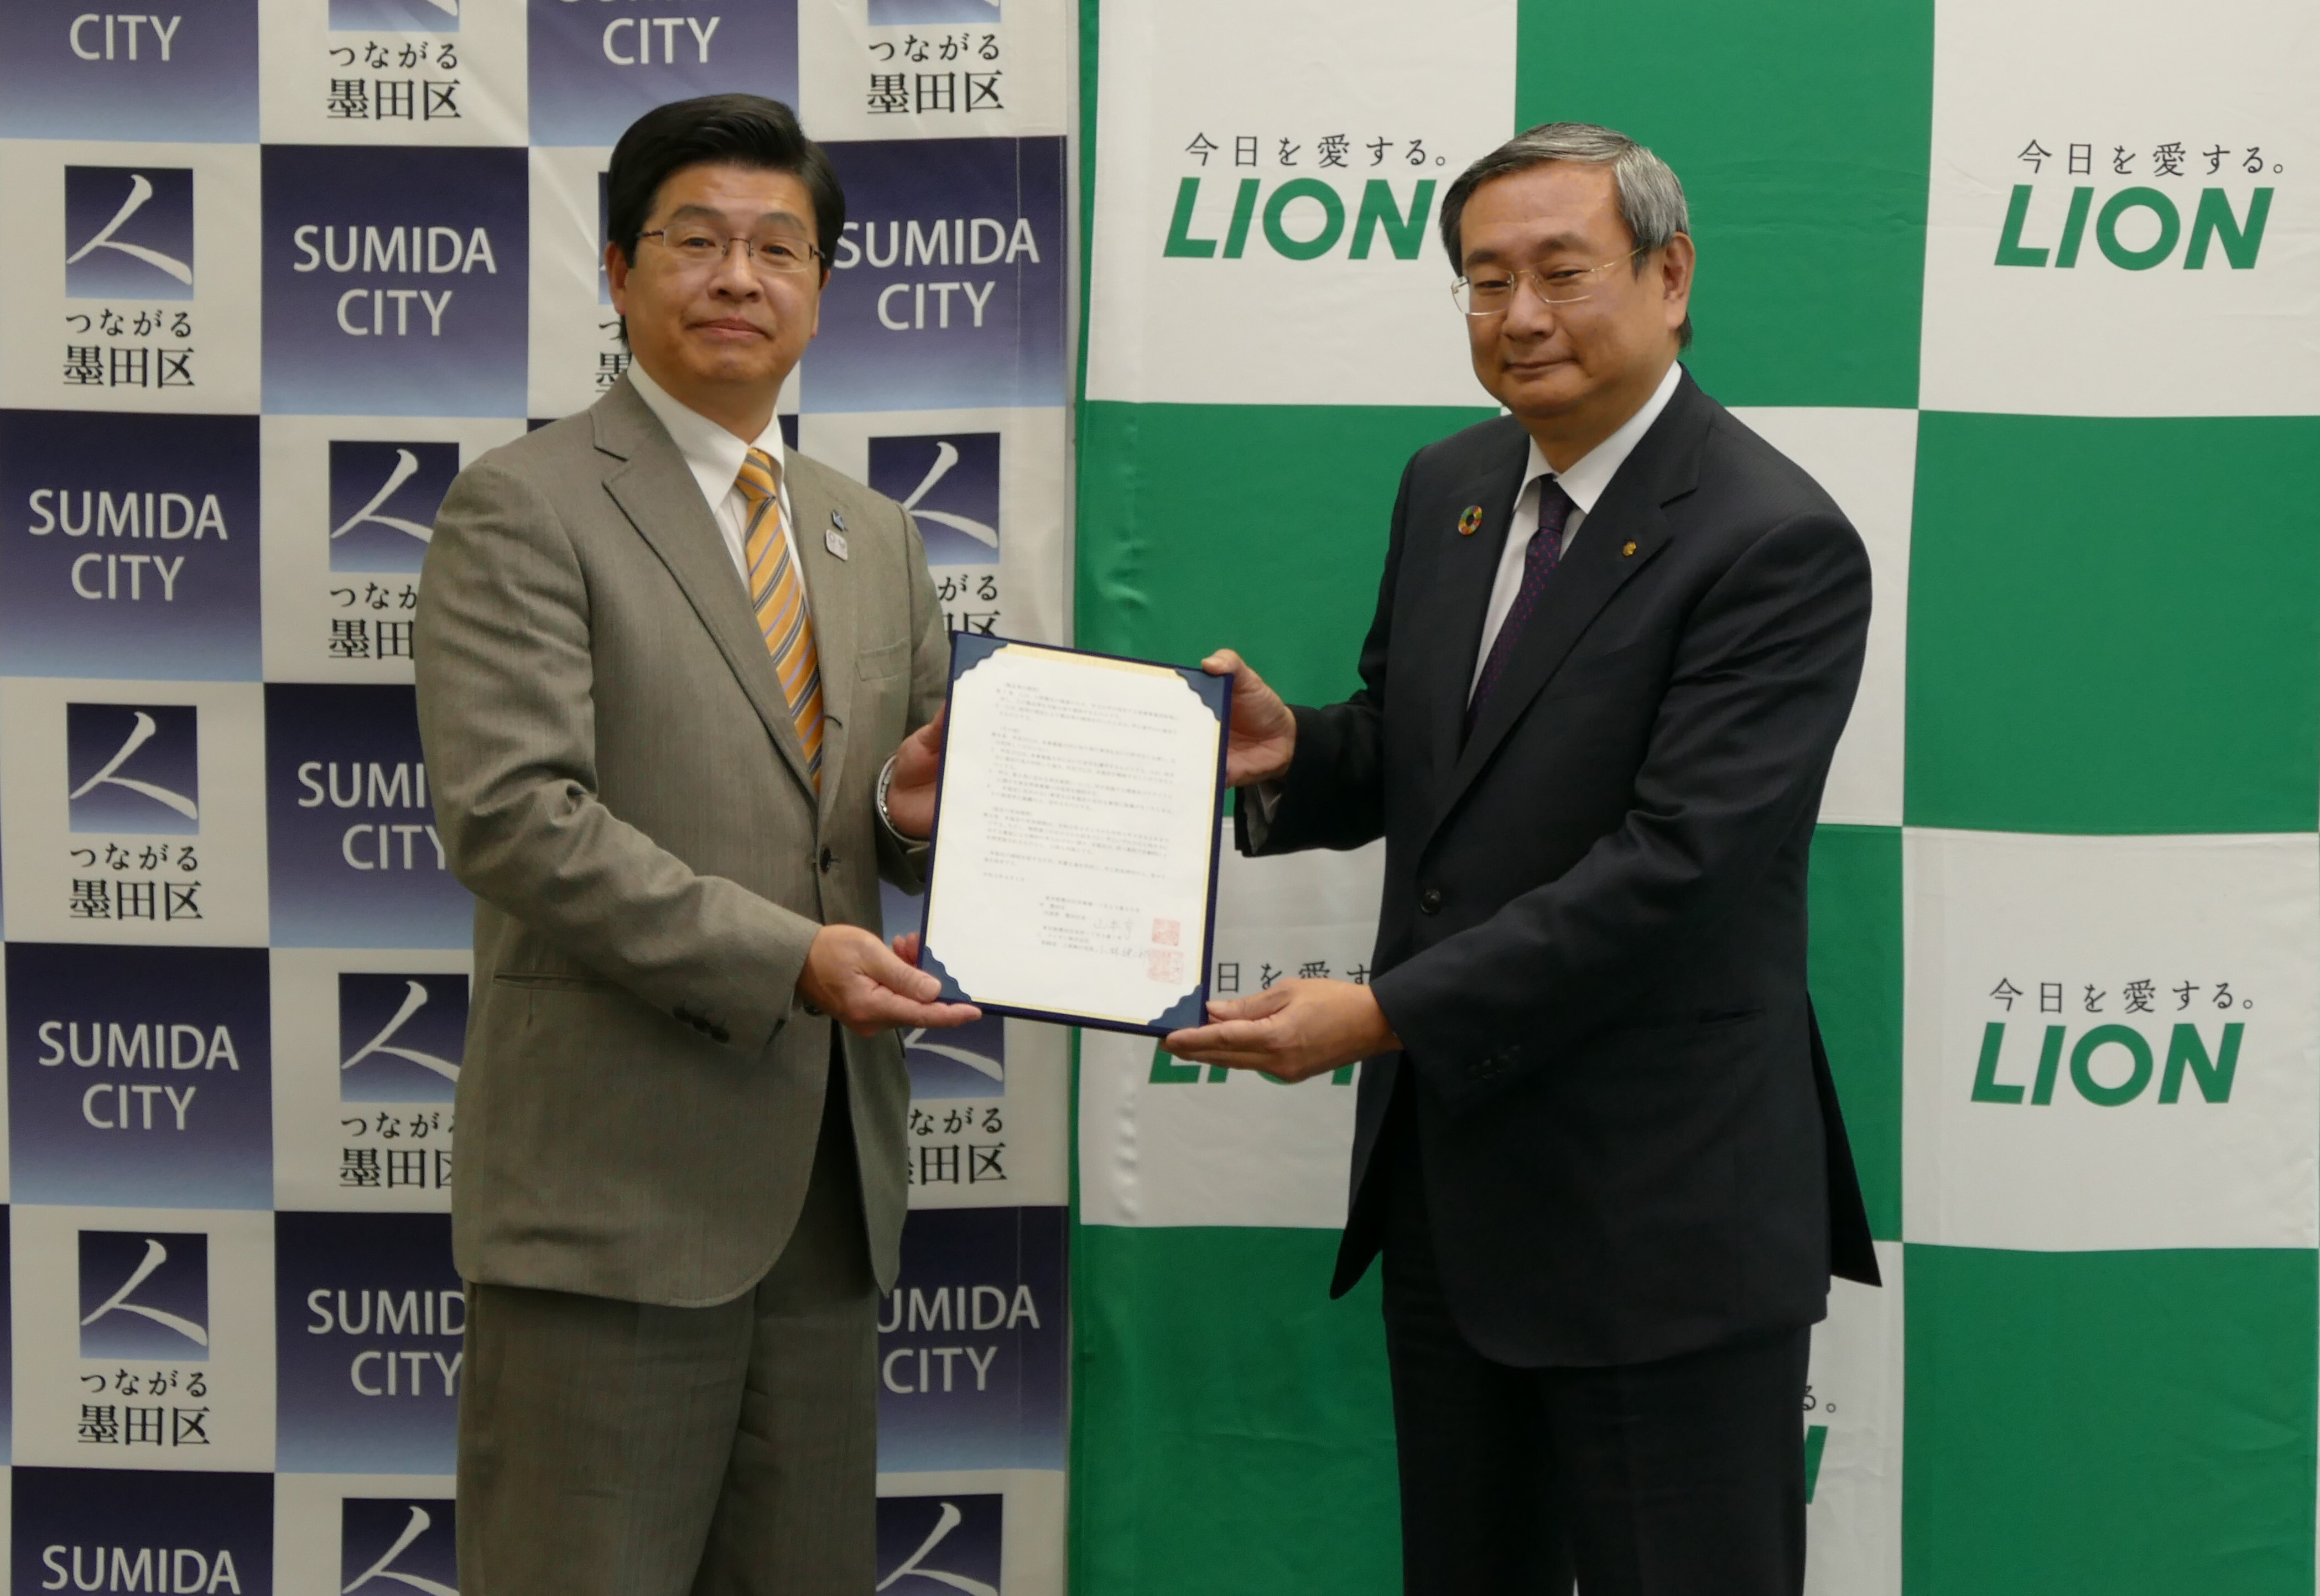 ライオン 東京都墨田区とハブラシリサイクルに関する協定を締結 区内85ヵ所に回収箱を設置 ハブラシを回収 再資源化 ライオン株式会社のプレスリリース